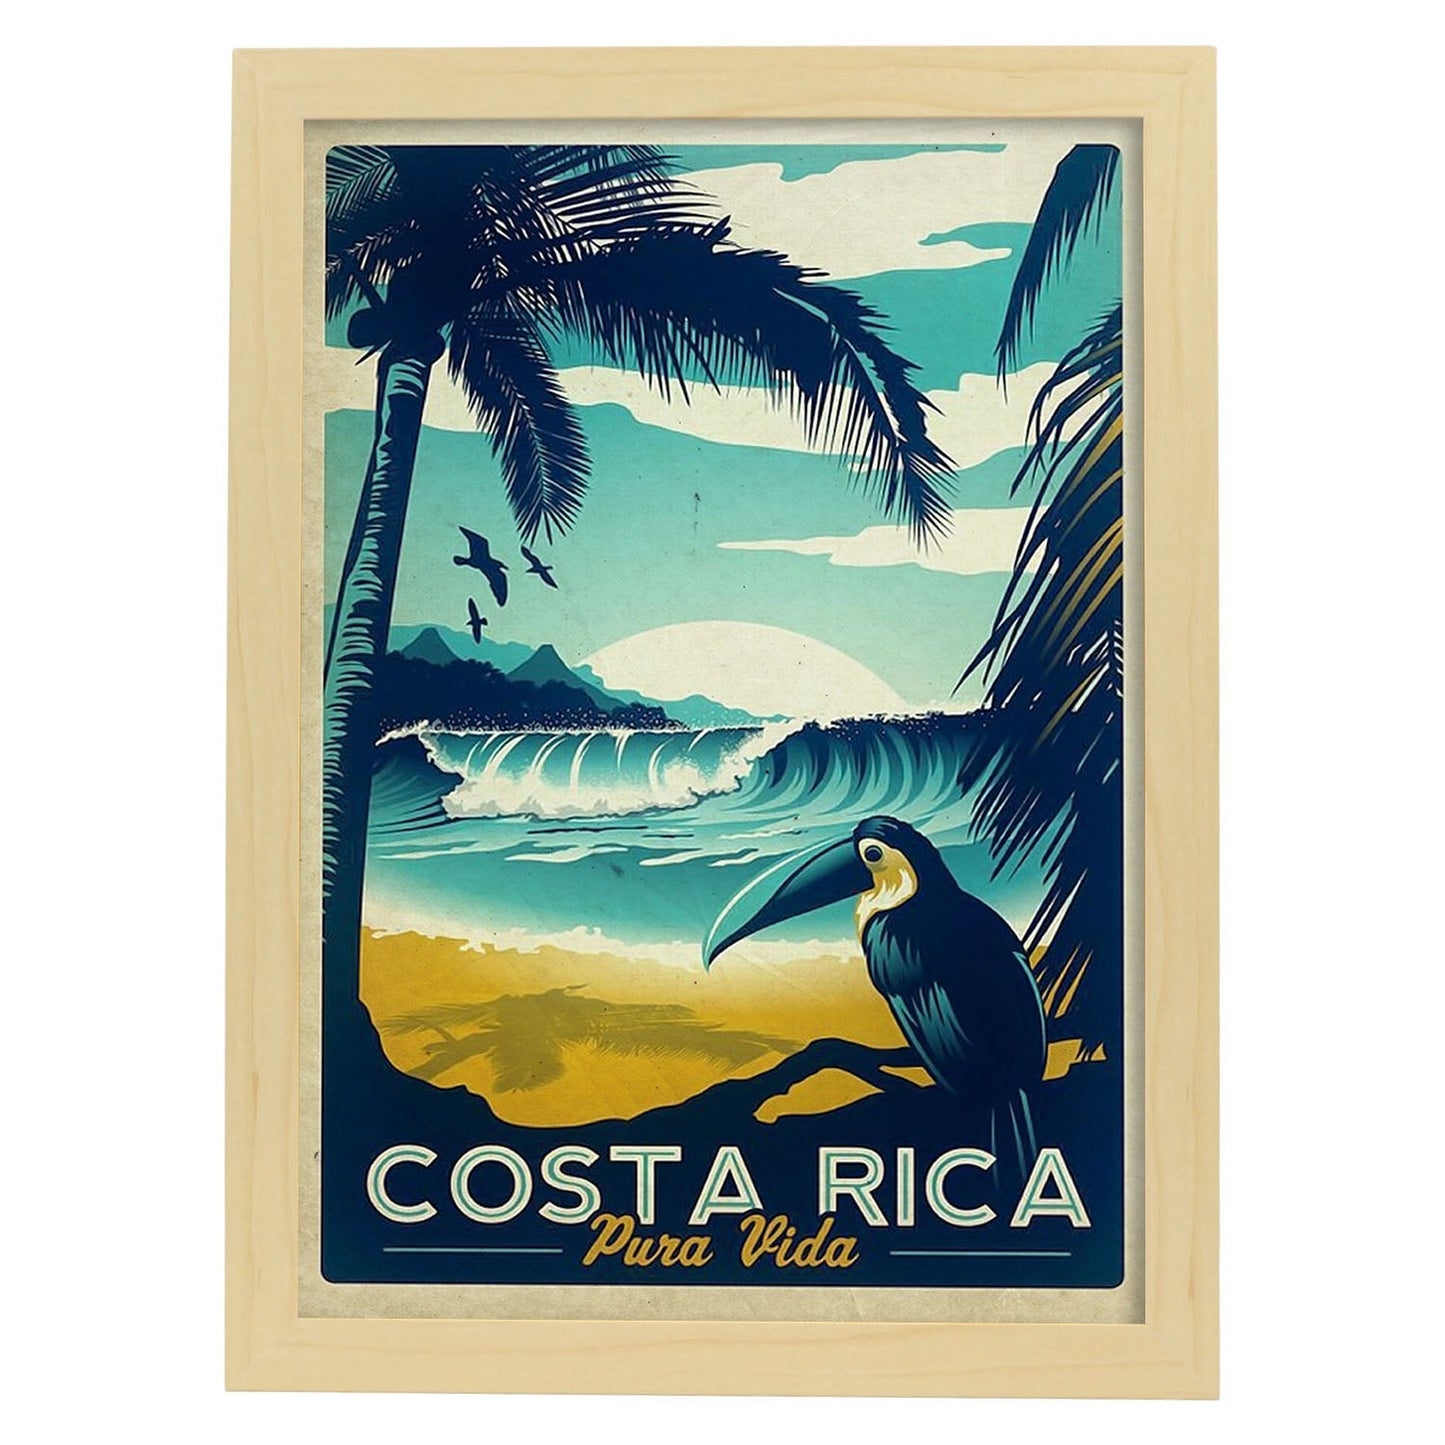 Poster vintage de Costa rica. con imágenes vintage y de publicidad antigua.-Artwork-Nacnic-A4-Marco Madera clara-Nacnic Estudio SL